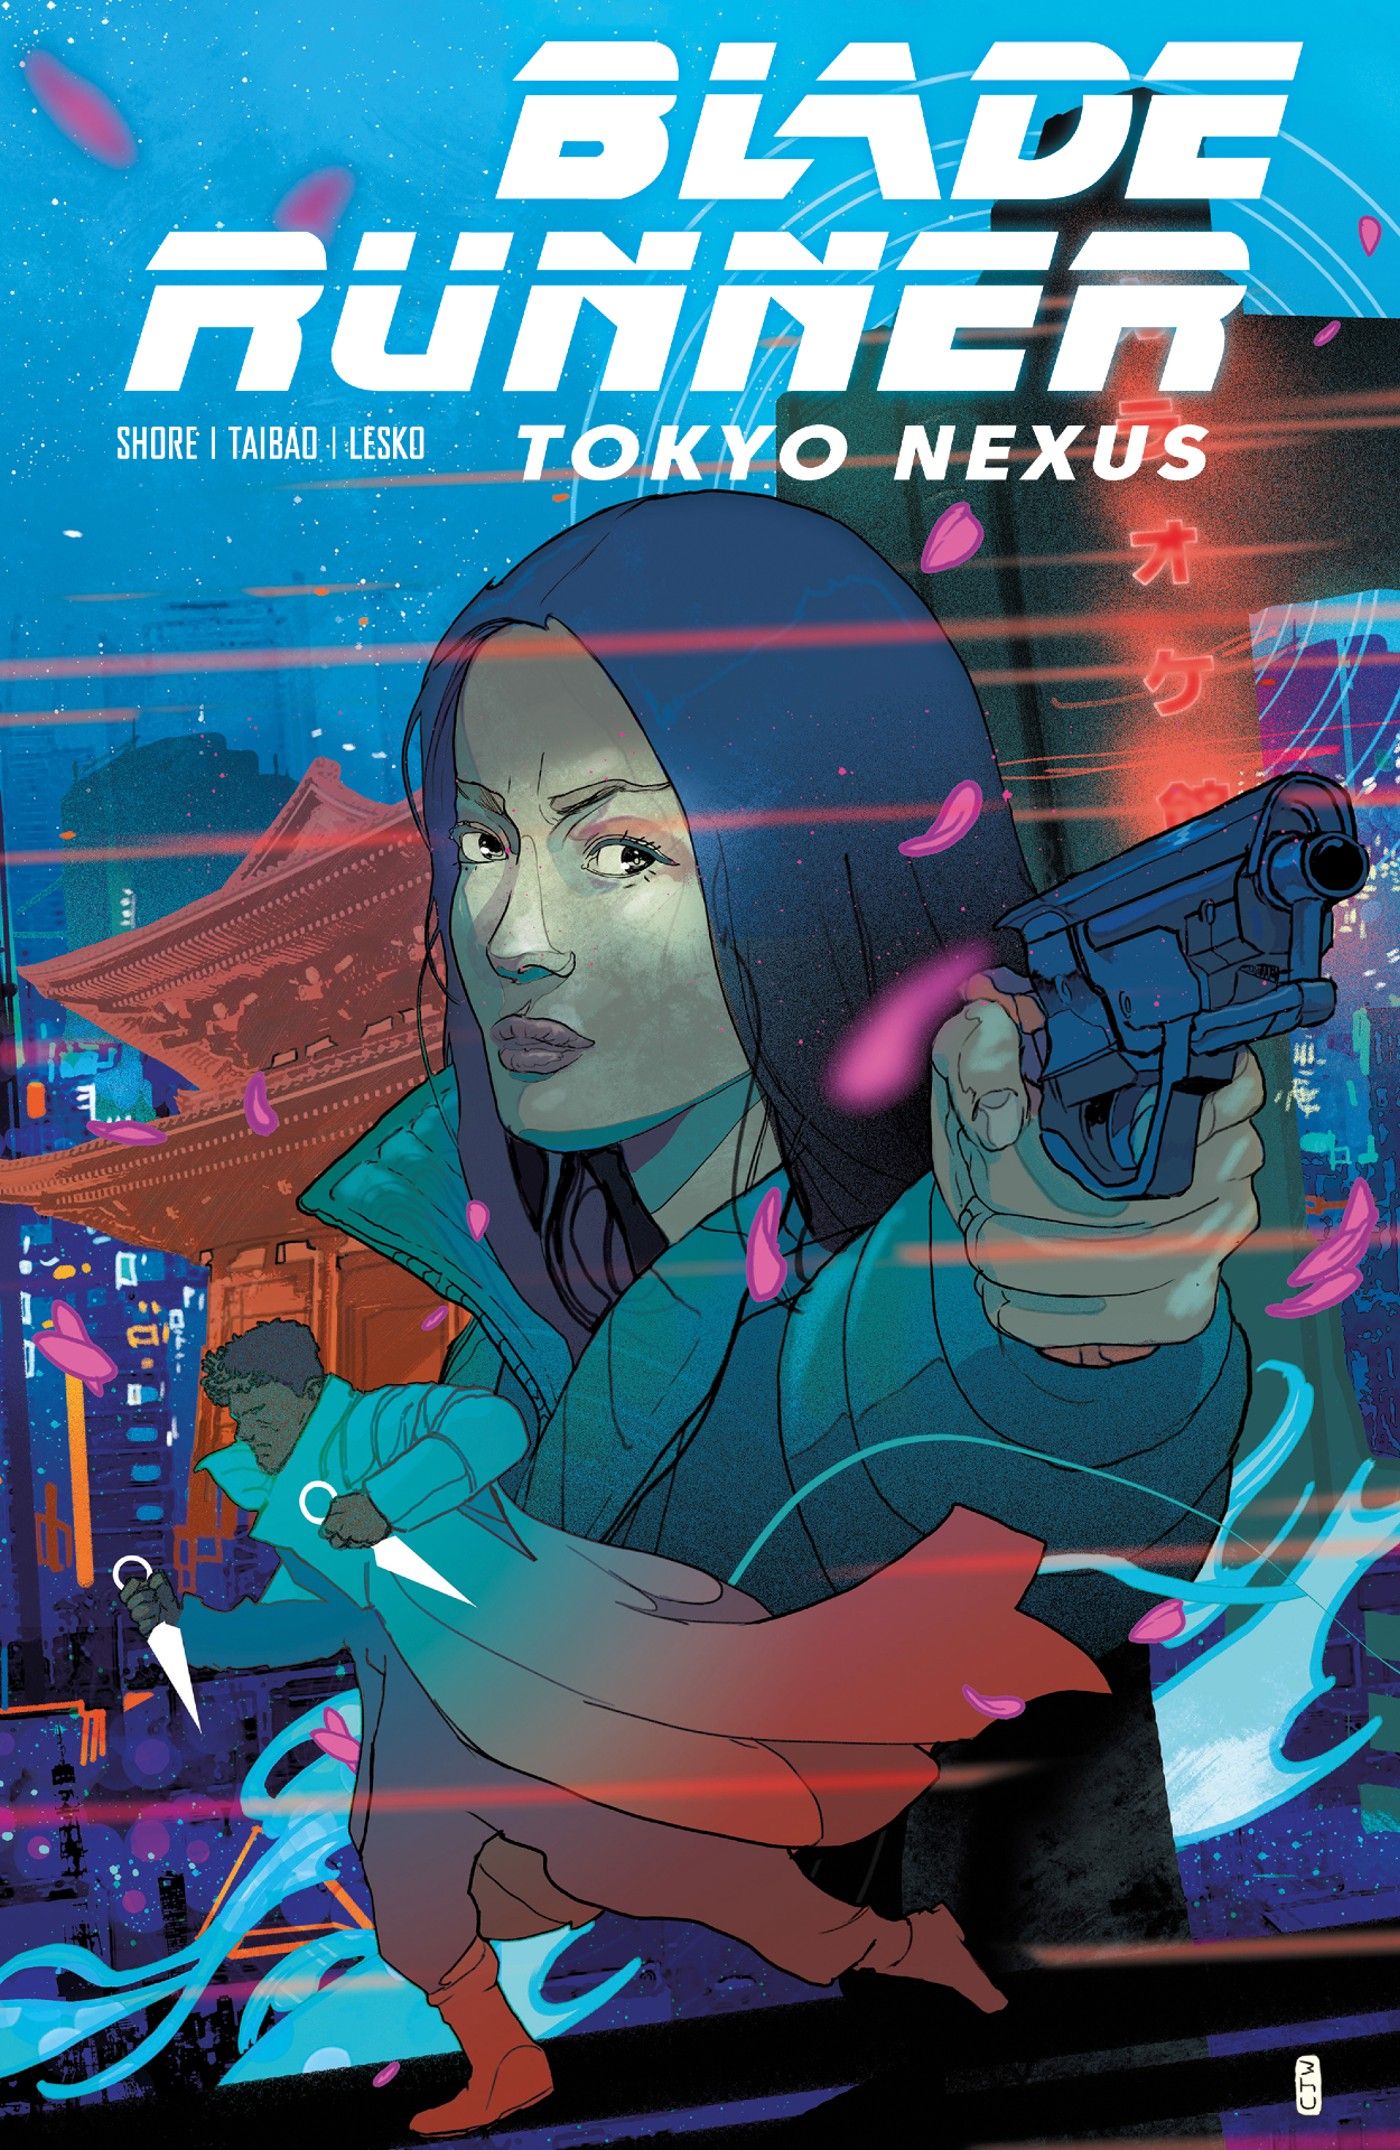 Uma mulher aponta uma arma enquanto uma figura corre na parte inferior da capa de Blade Runner Tokyo Nexus #1 com arte de Christian Ward